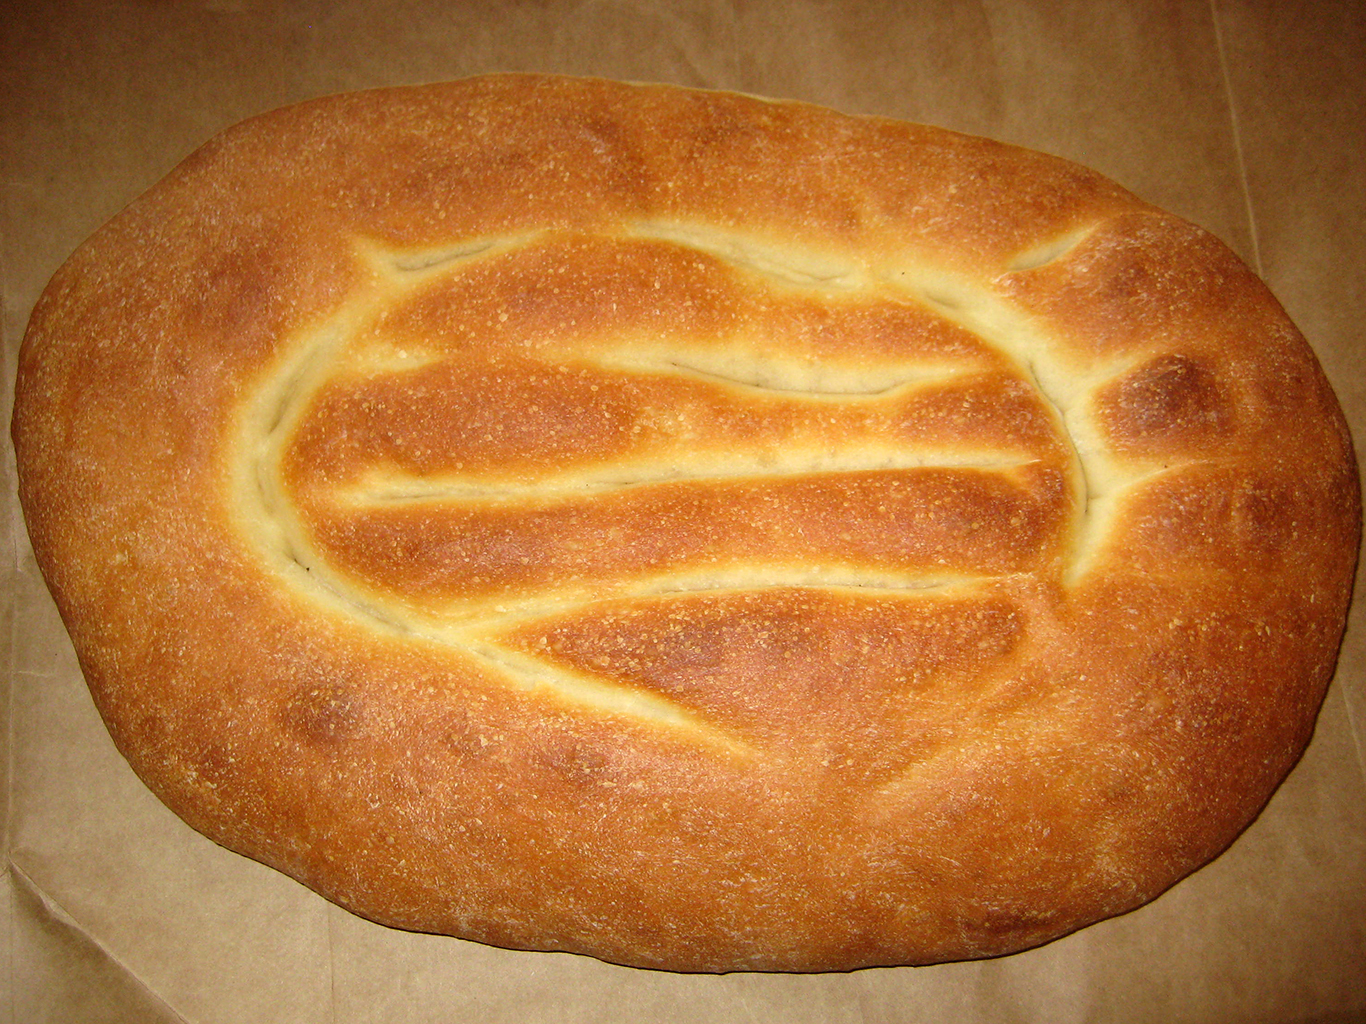 Oválný kvašený chléb v podobě placek zvaný matnakaš